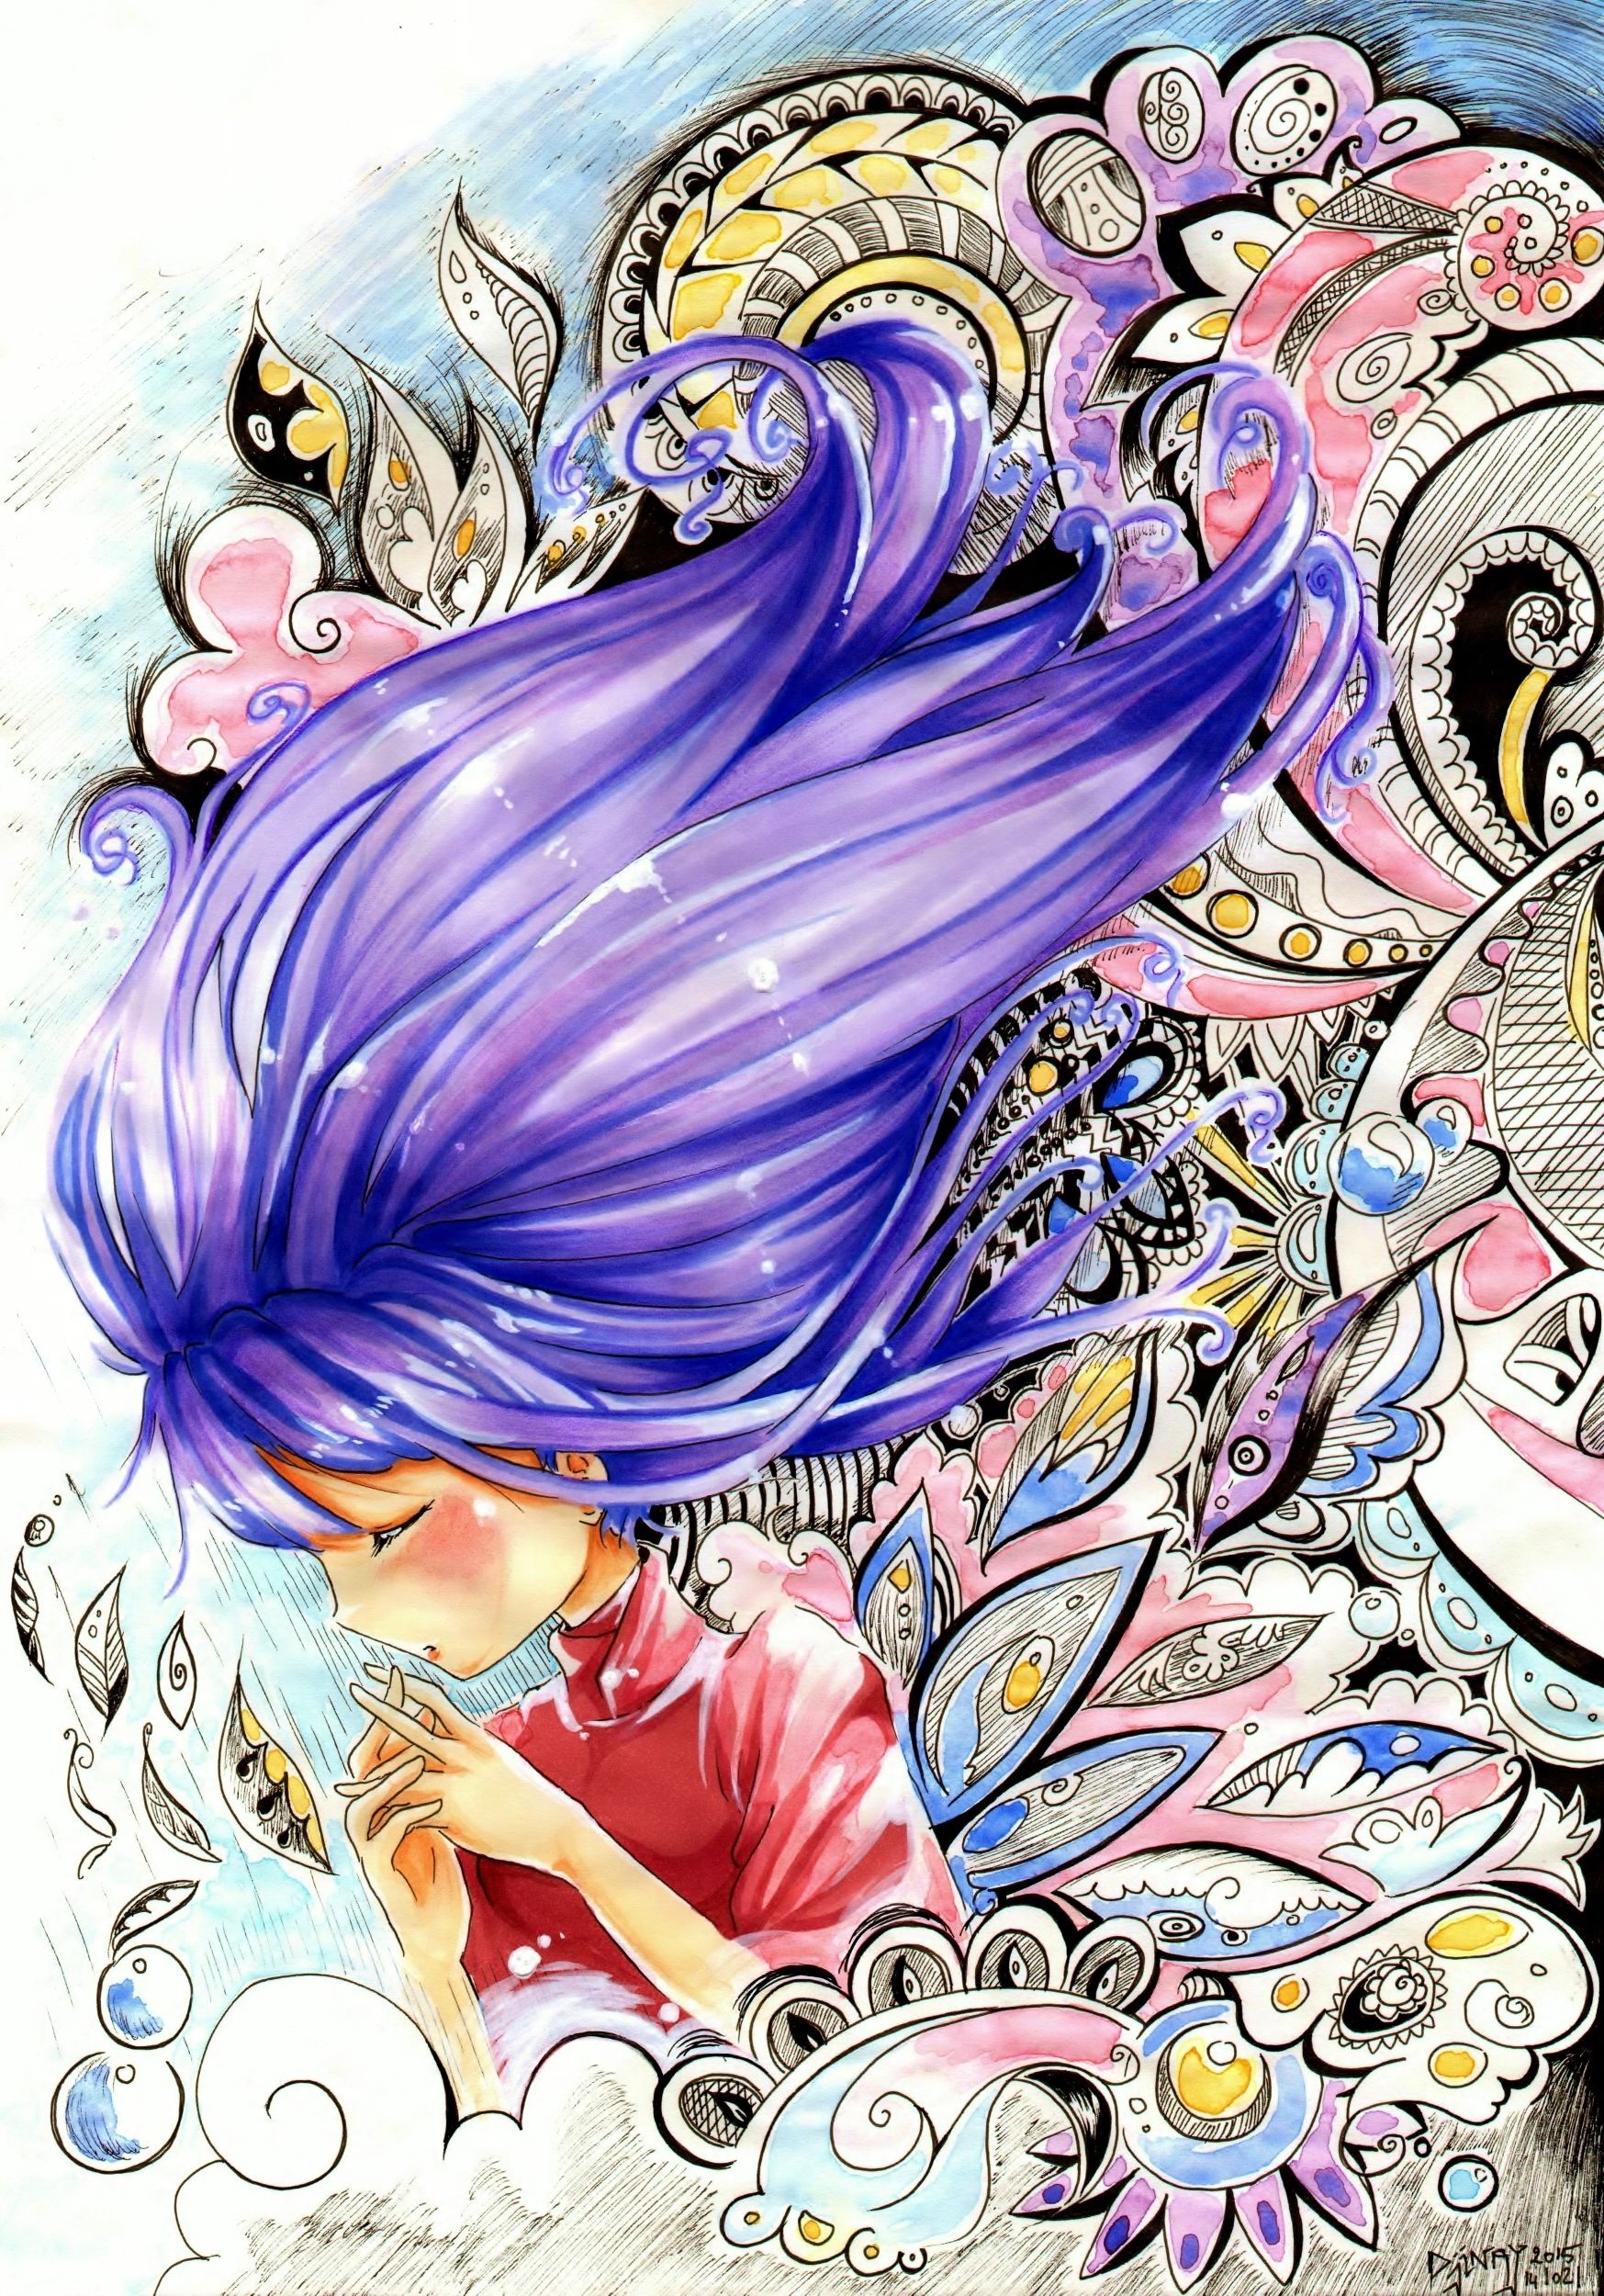 Fonds d'cran Art - Crayon Manga - Divers Lost Dreams